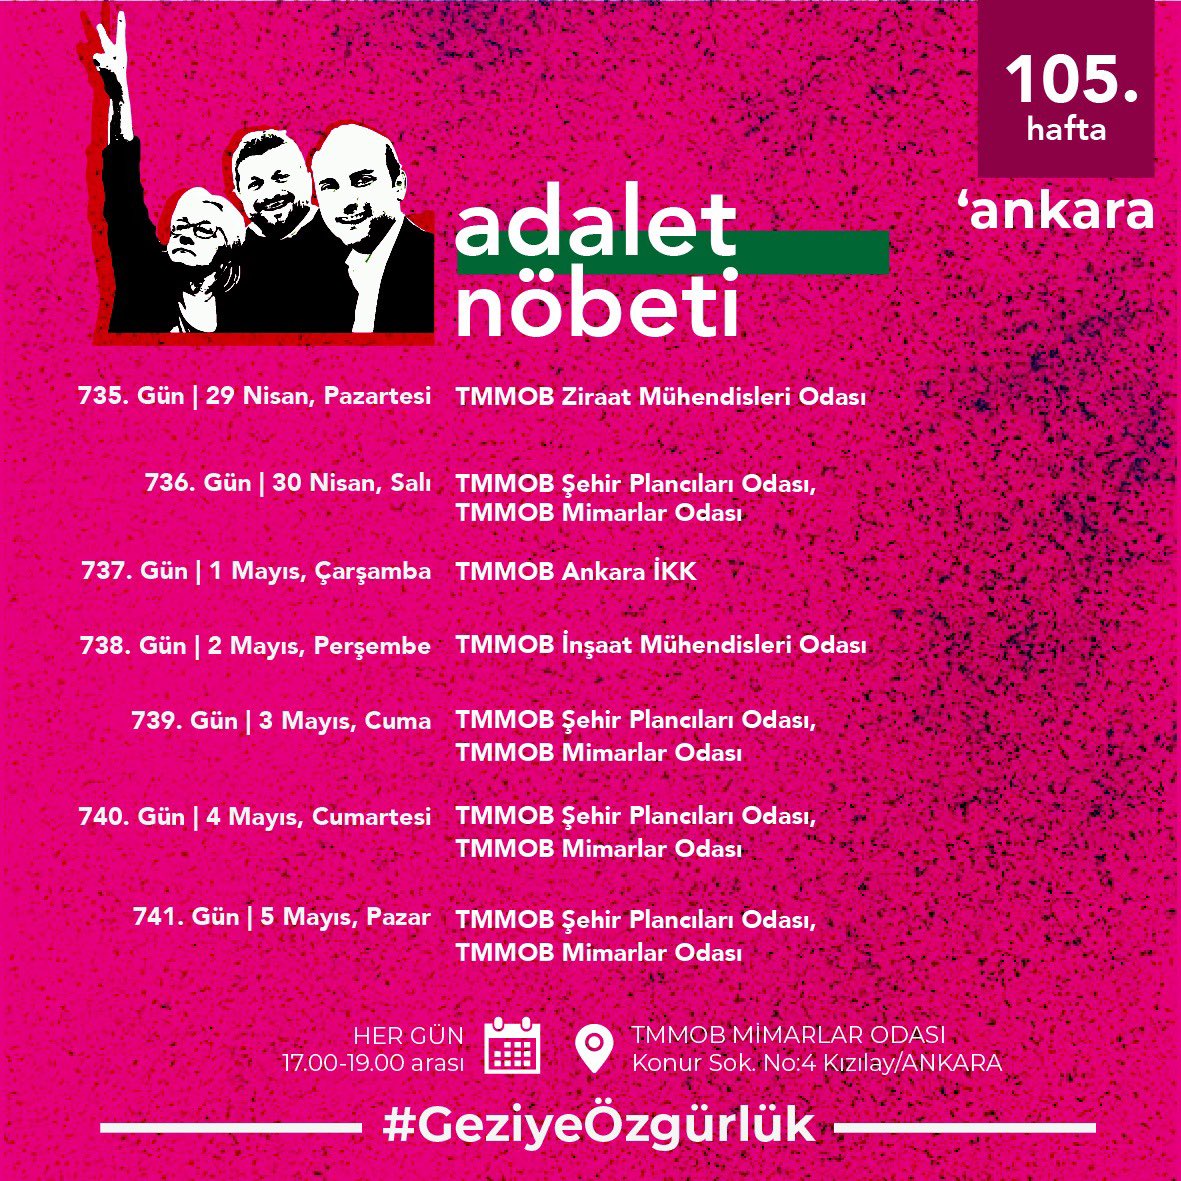 105. Hafta | Ankara Adalet Nöbeti’nin nöbet programı 🗓 Her gün ⏰ 17.00-19.00 📍 TMMOB Mimarlar Odası #GeziyeÖzgürlük #GeziyiSavunuyoruz